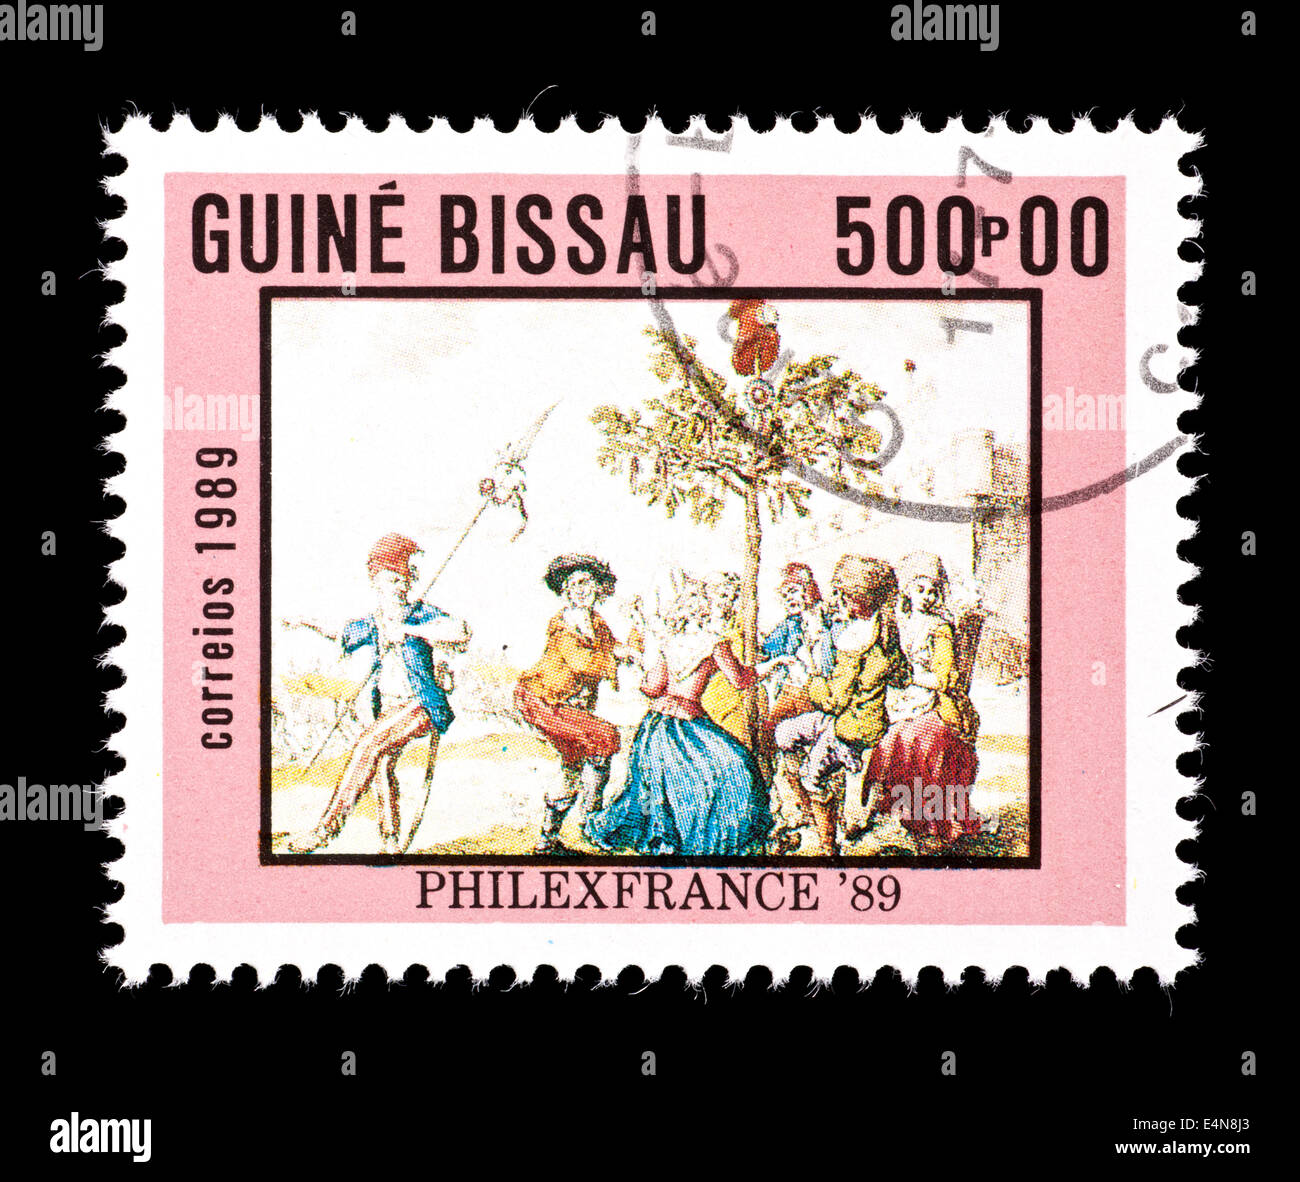 Briefmarke aus Guinea-Bissau Darstellung der Malerei tanzen rund um die LIberty Tree (französische Revolution bicentennial) Stockfoto